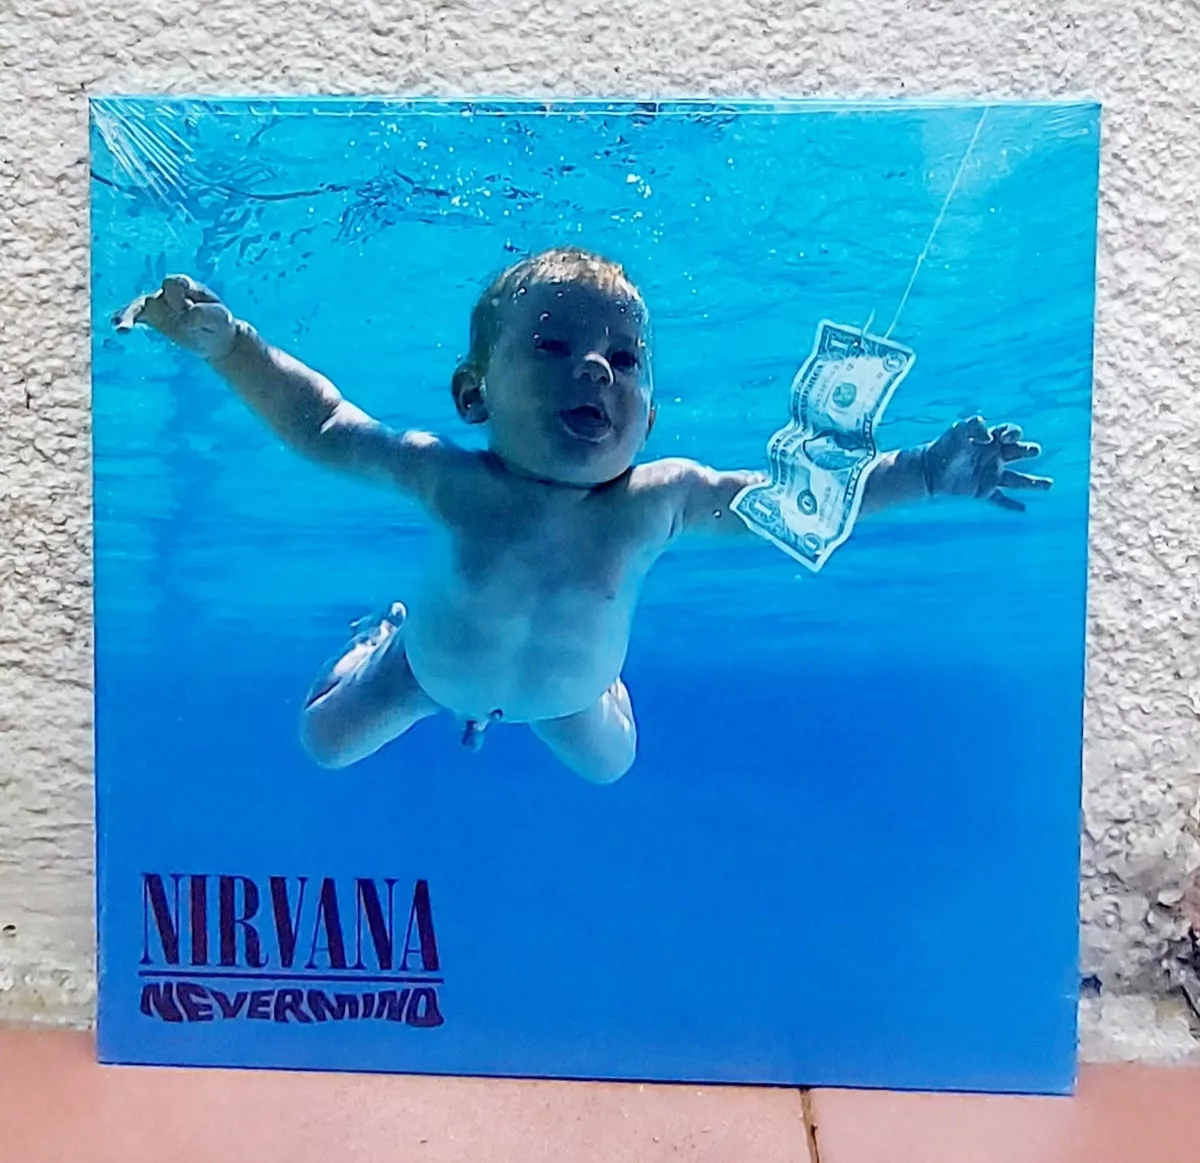 Nirvana (nevermind Vinilo, Pearl Jam, Soundgarden.